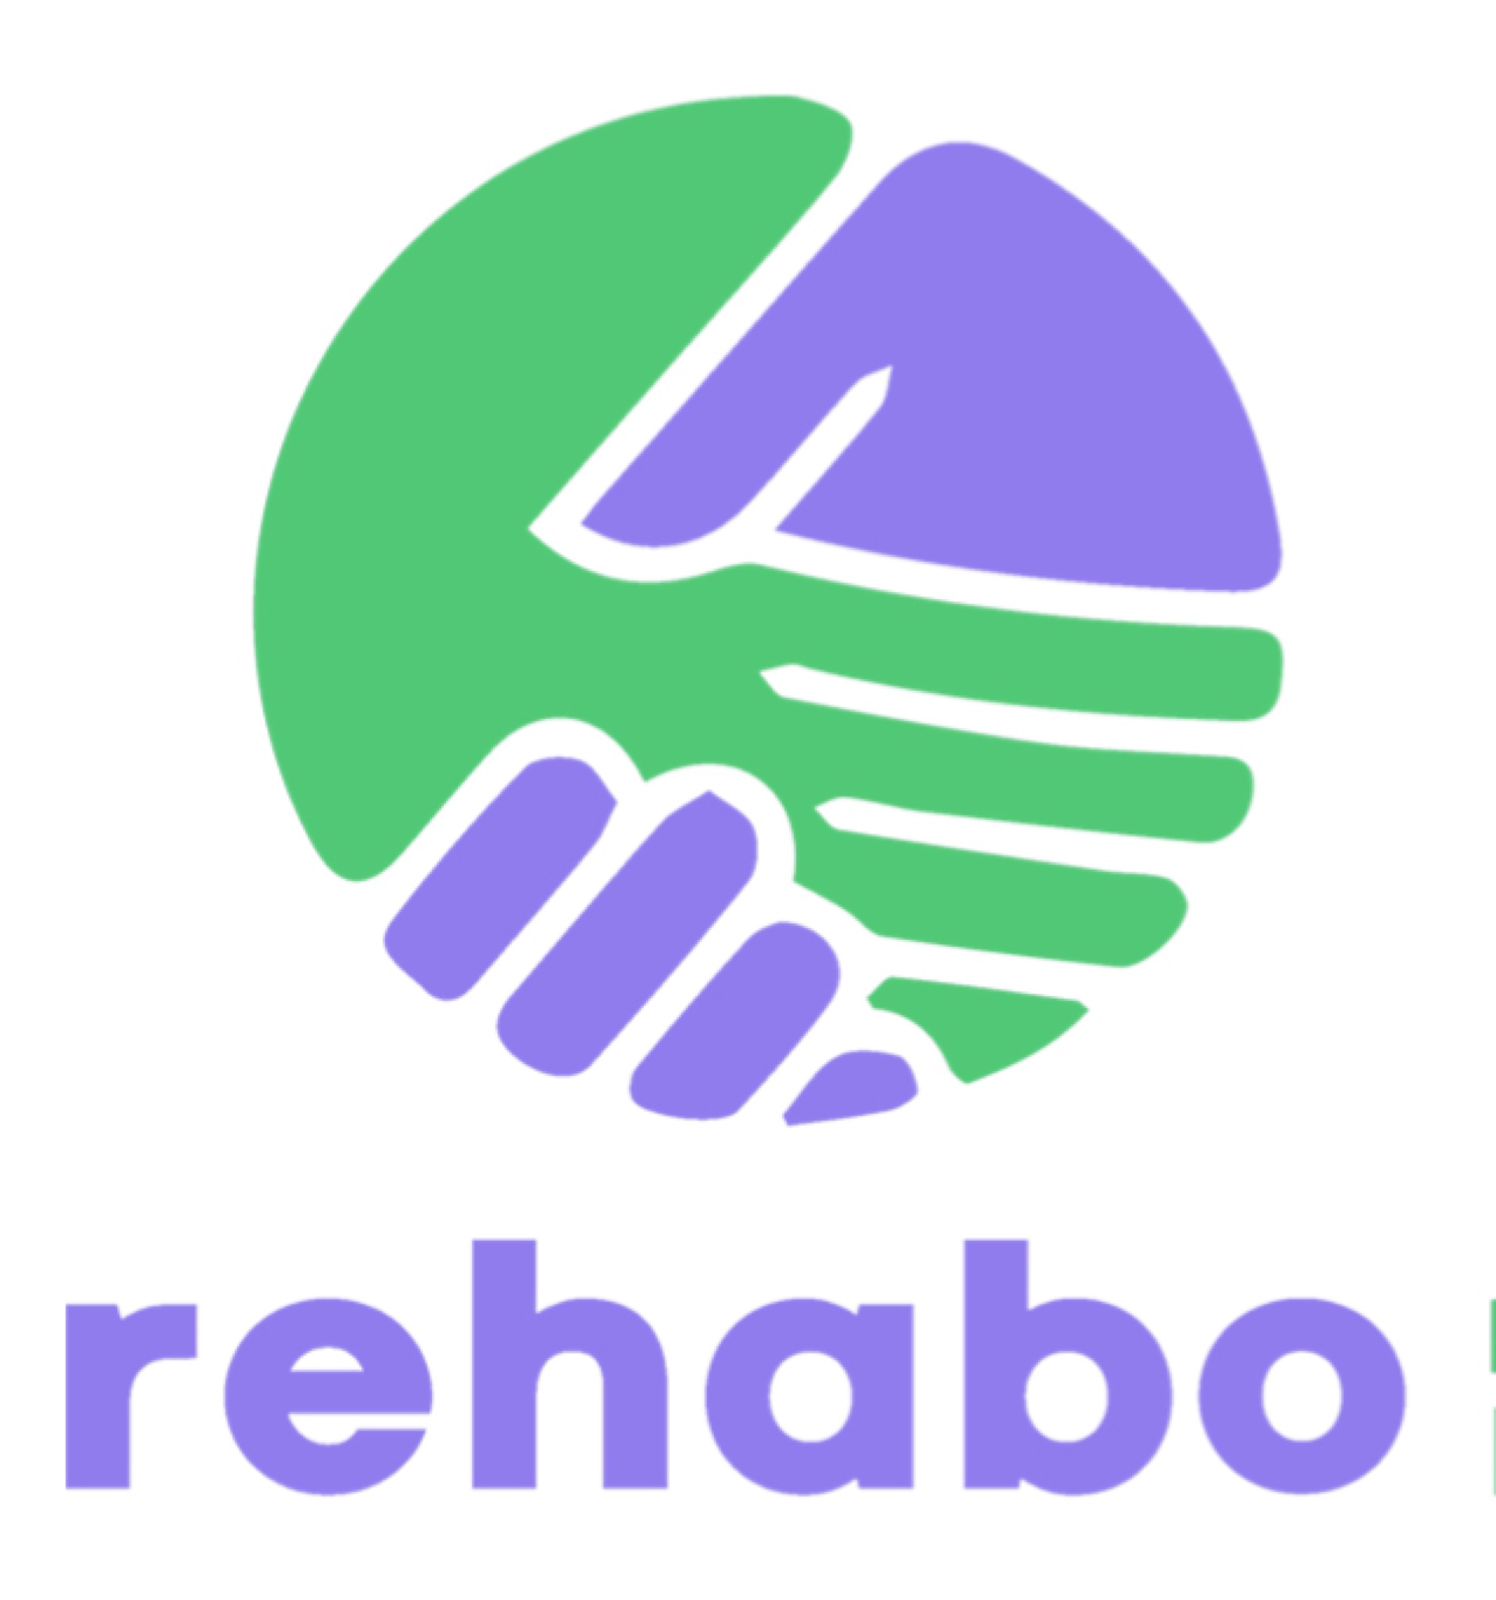 rehabo